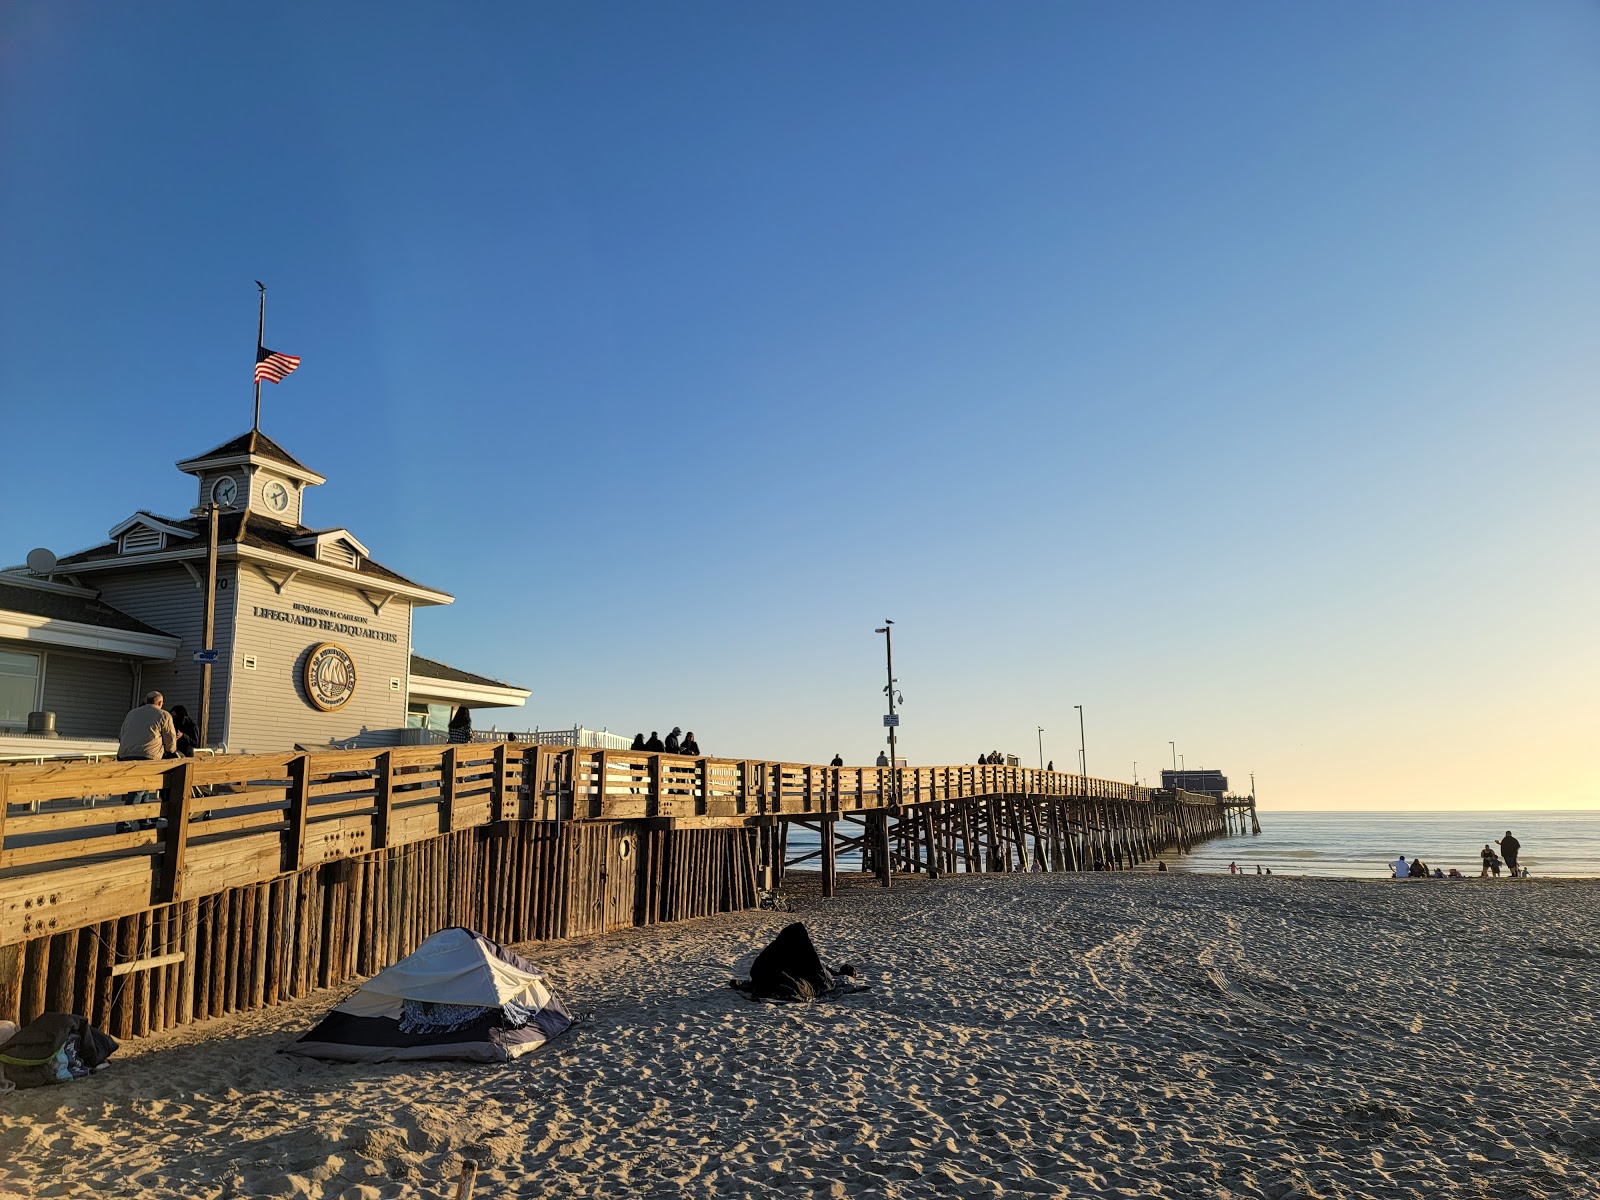 Newport Beach'in fotoğrafı - rahatlamayı sevenler arasında popüler bir yer